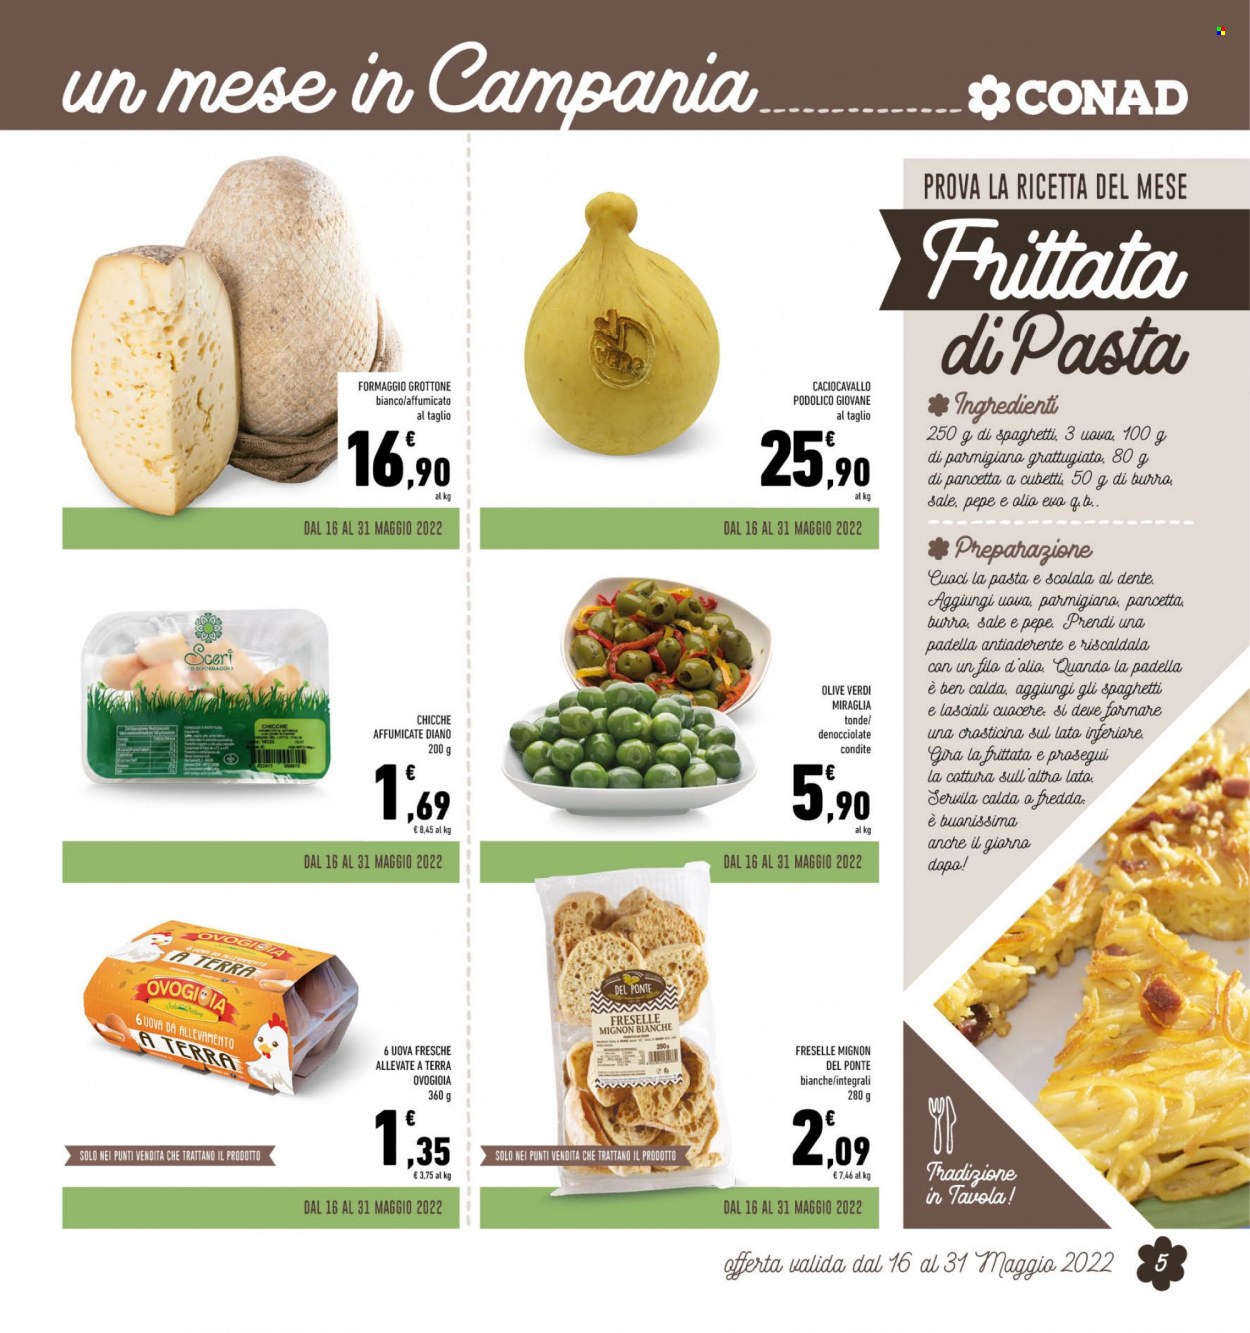 thumbnail - Volantino Conad - 1/5/2022 - 31/5/2022 - Prodotti in offerta - pancetta, chicche, olive, olive verdi, spaghetti, olio. Pagina 5.